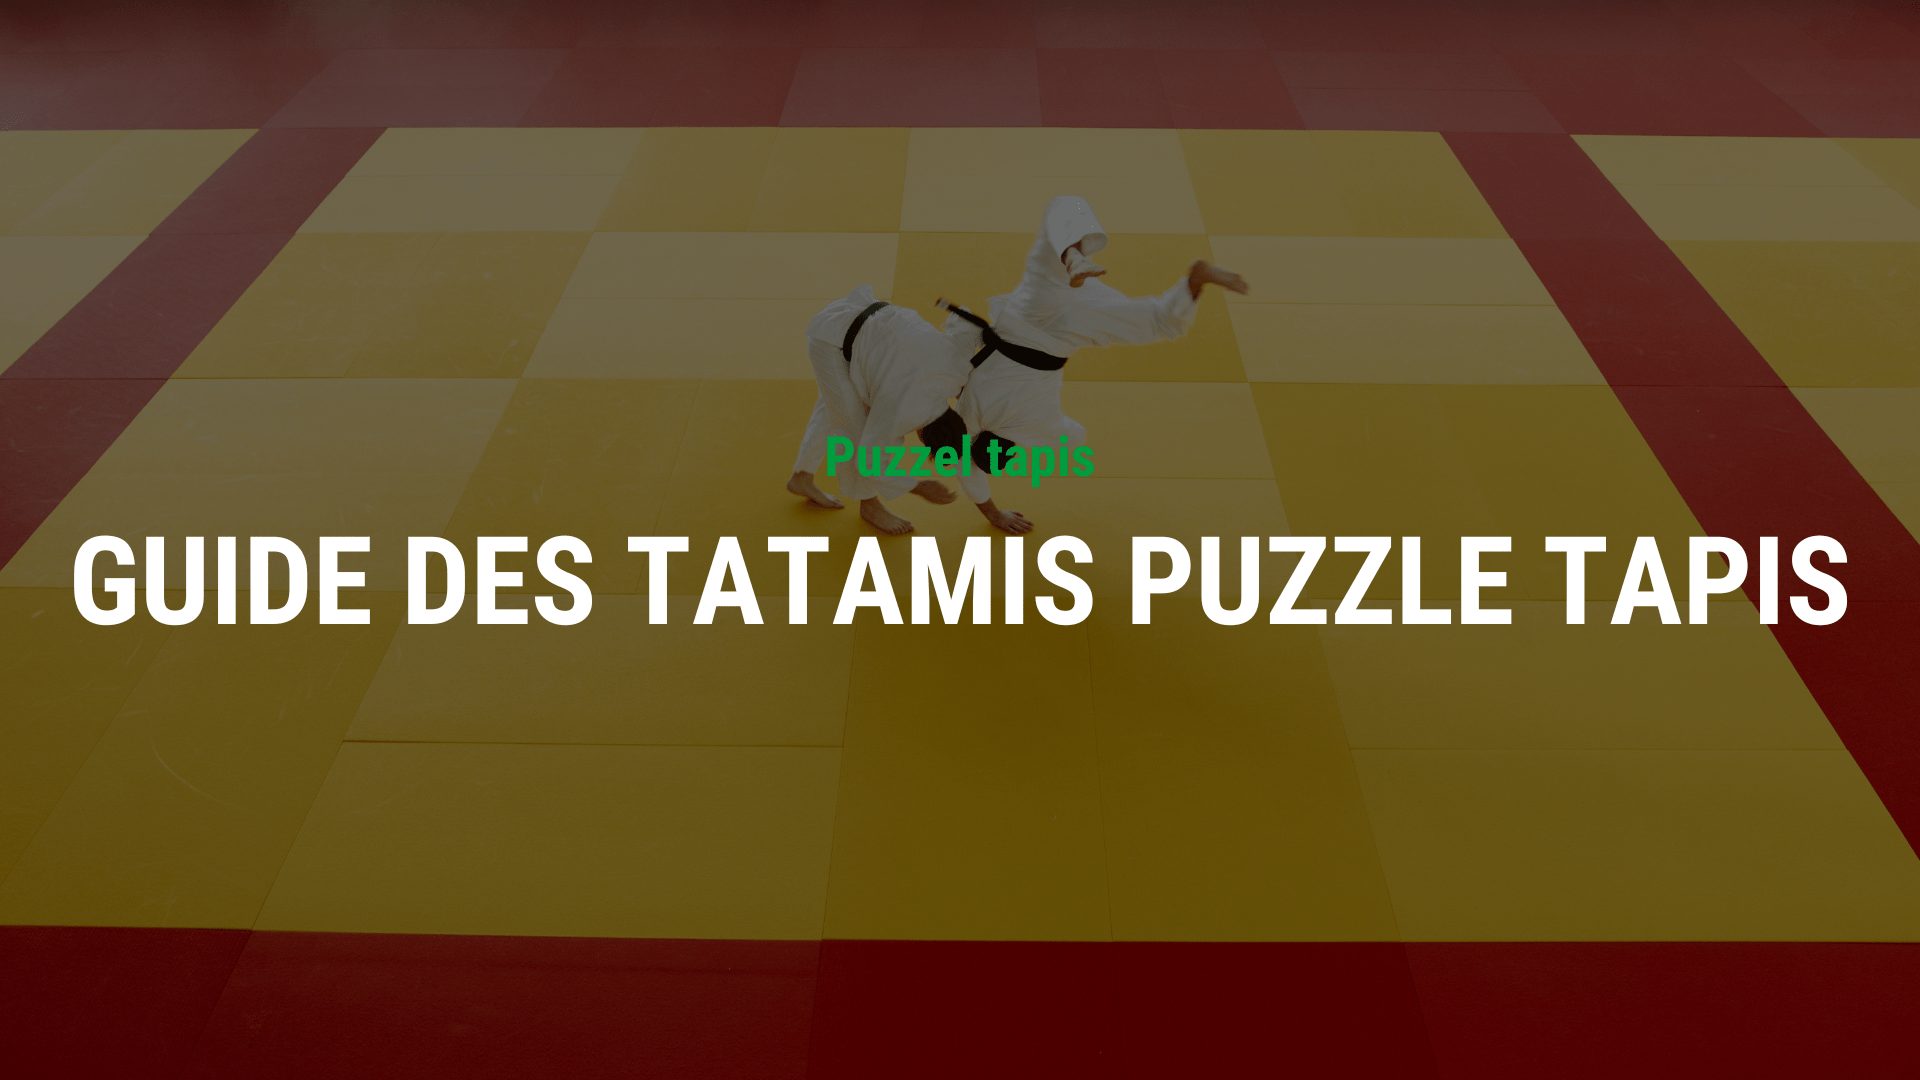 Choisir la bonne épaisseur : Un guide des tatamis puzzle tapis